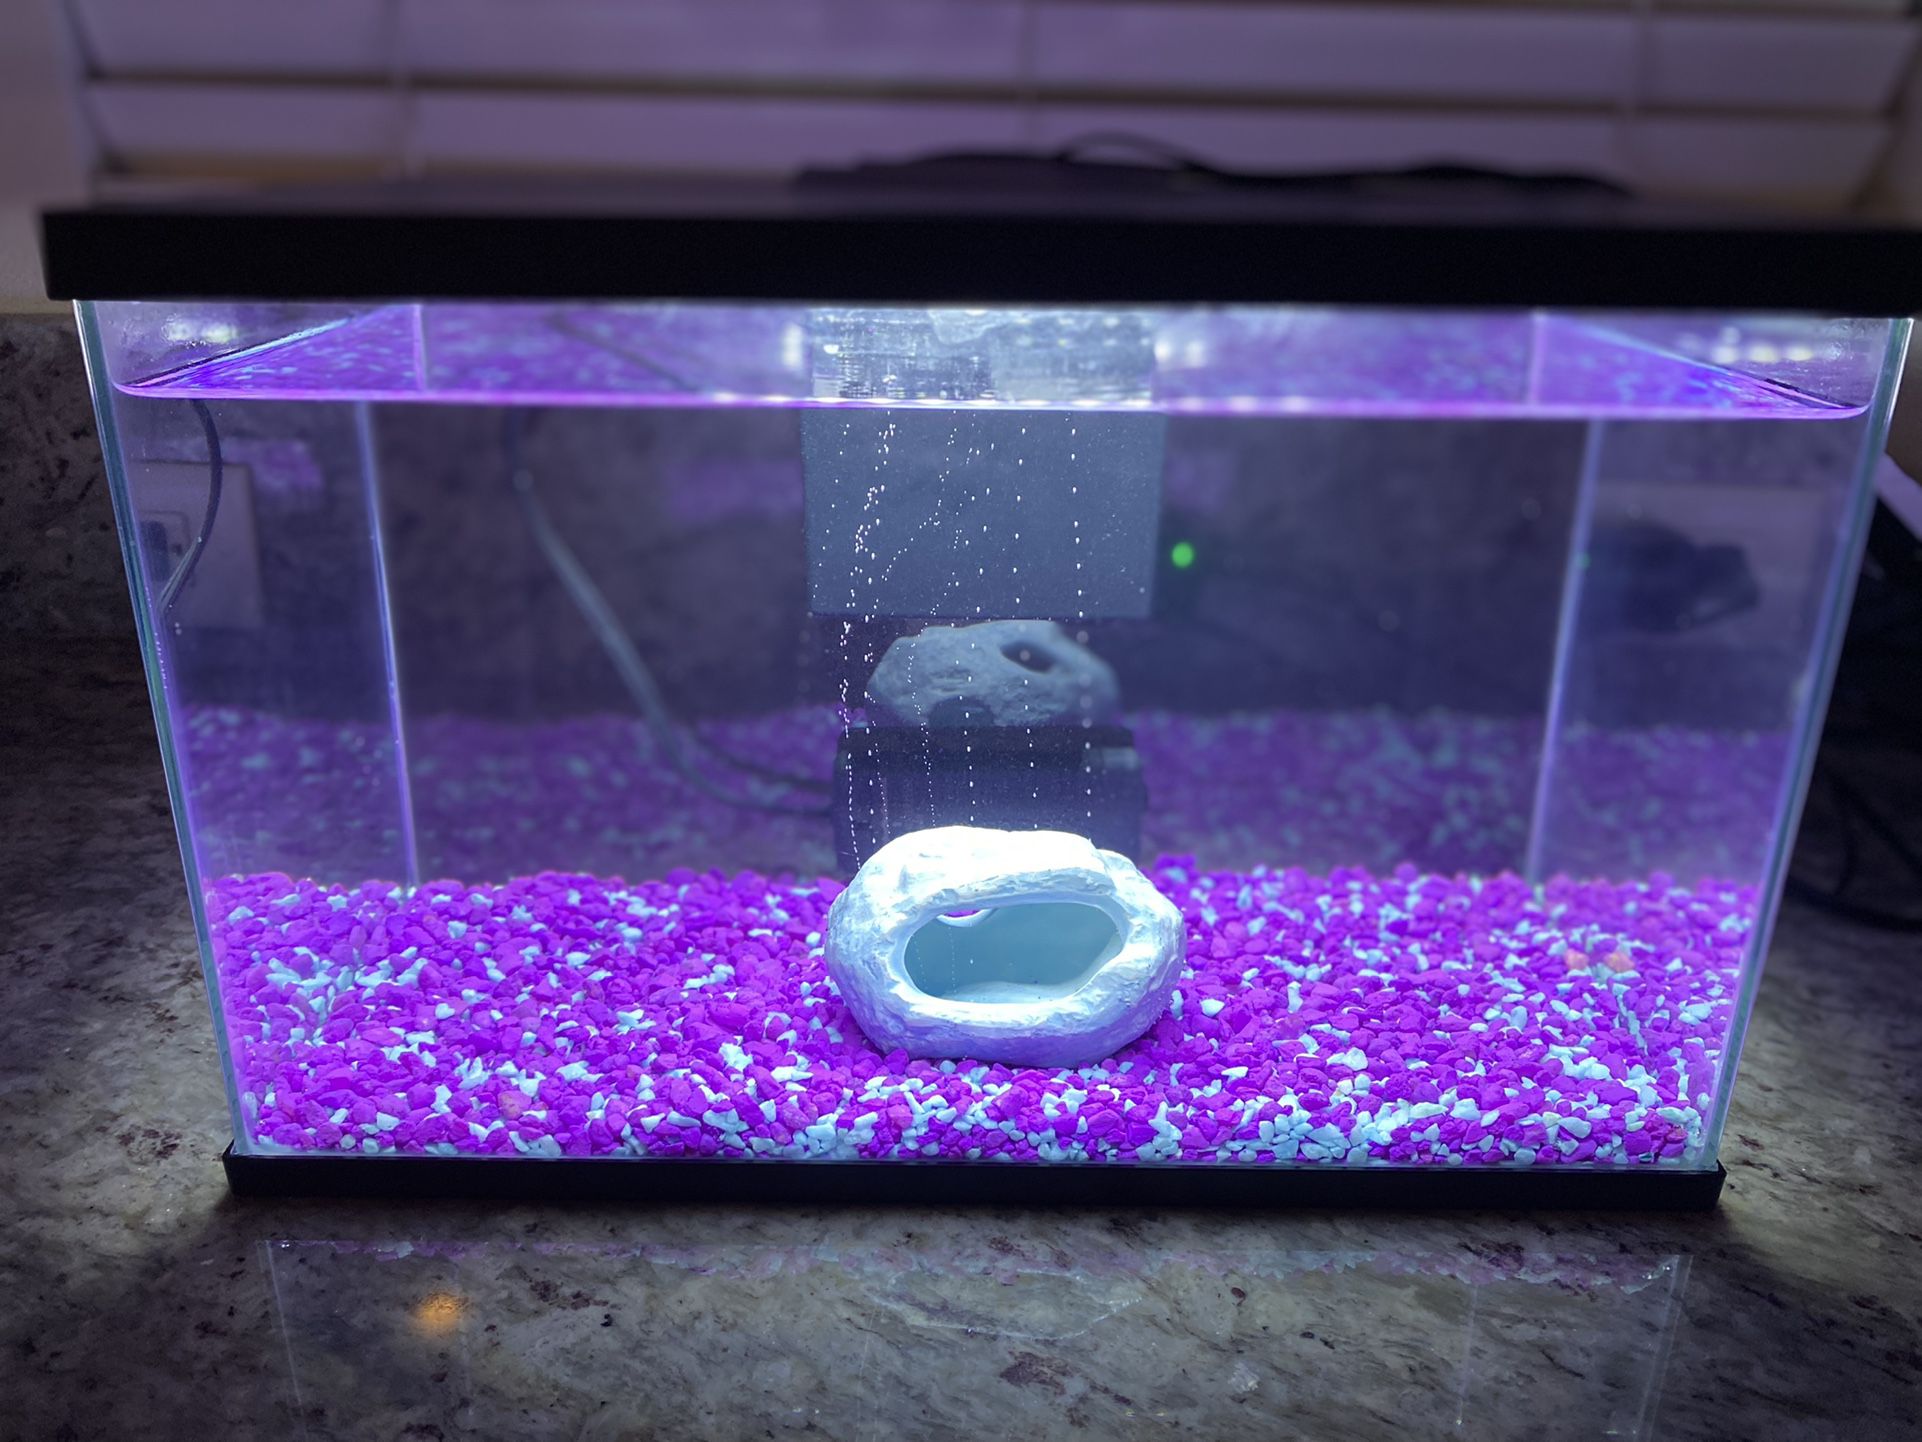 Fish Tank Aquarium Decor and Gravel 